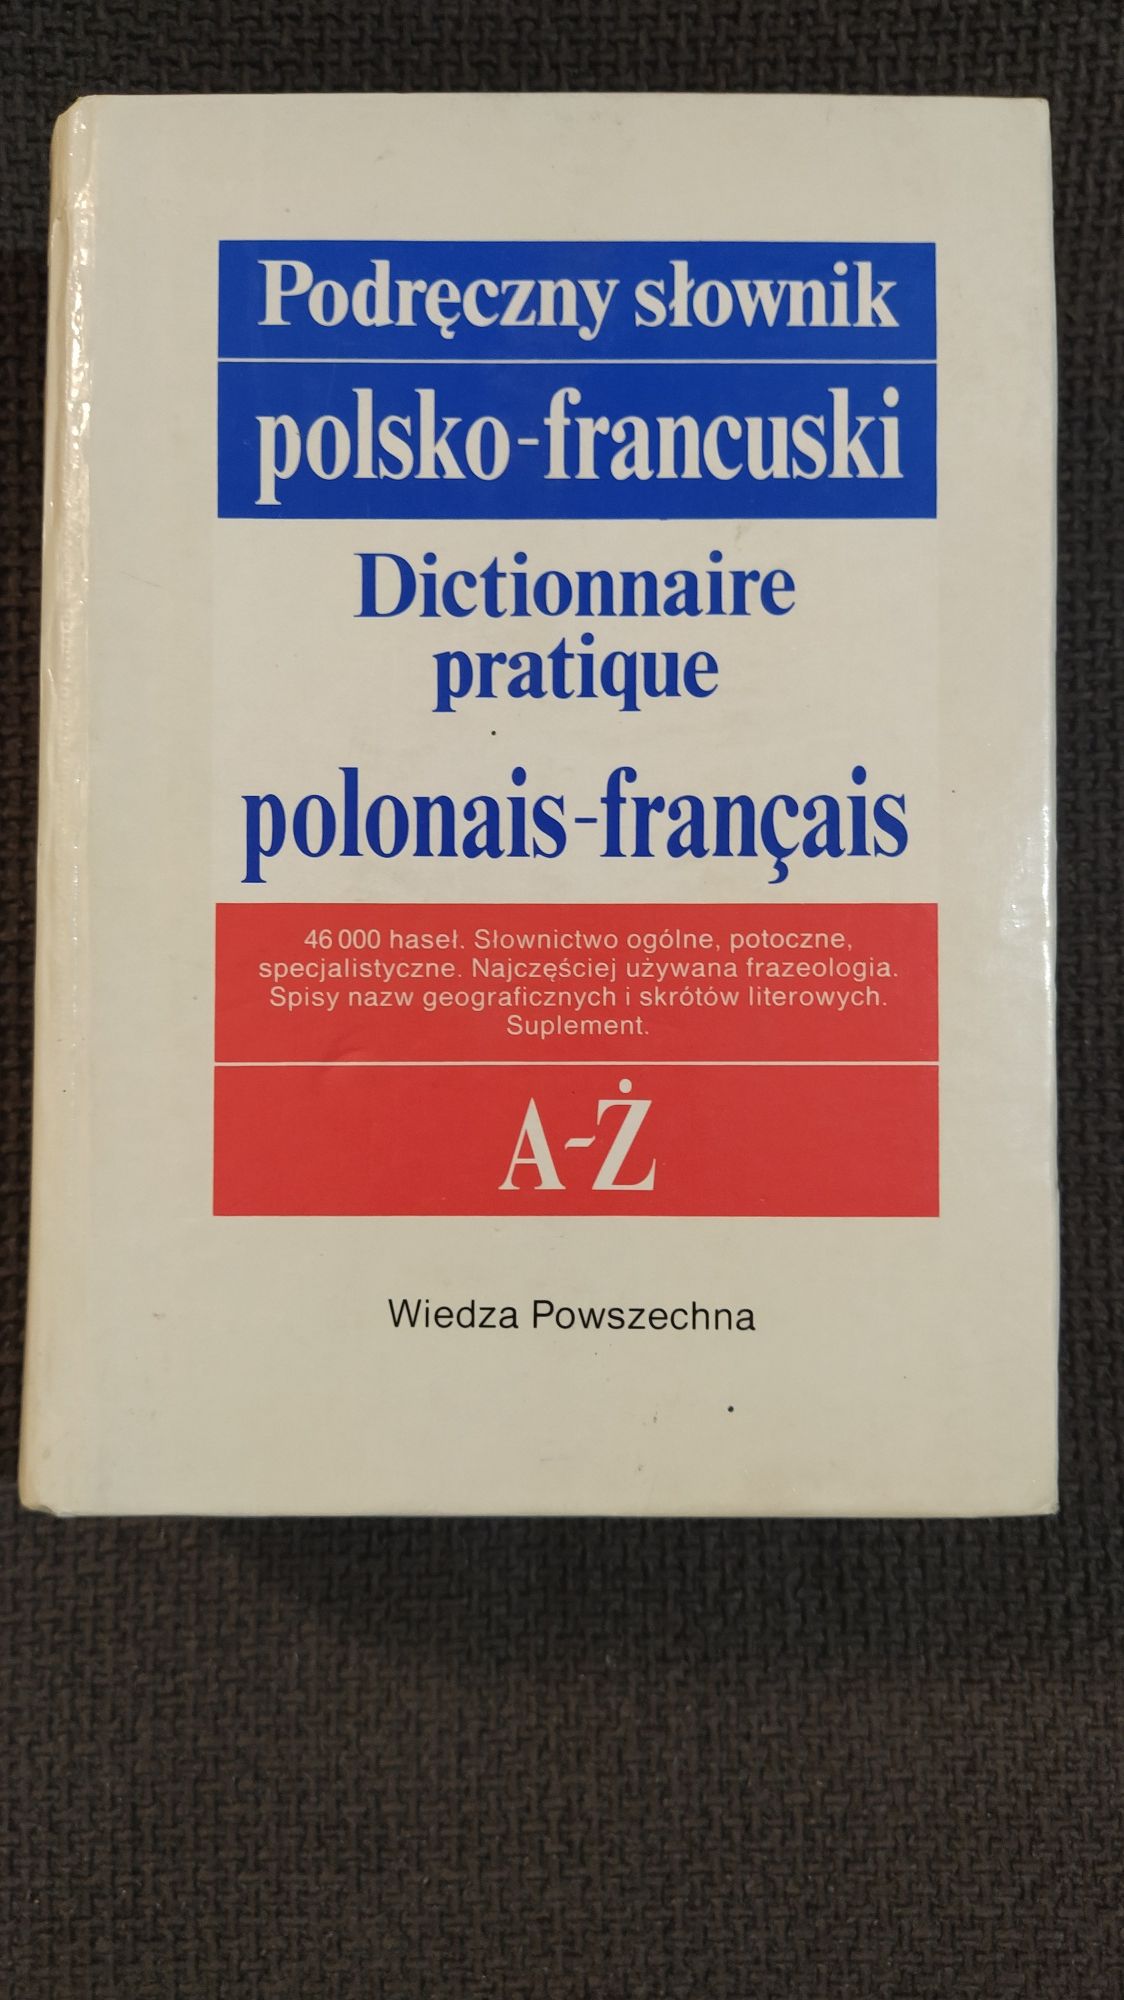 Podręczny Słownik polsko-francuski Kazimierz Kupisz, Bolesław Kielski